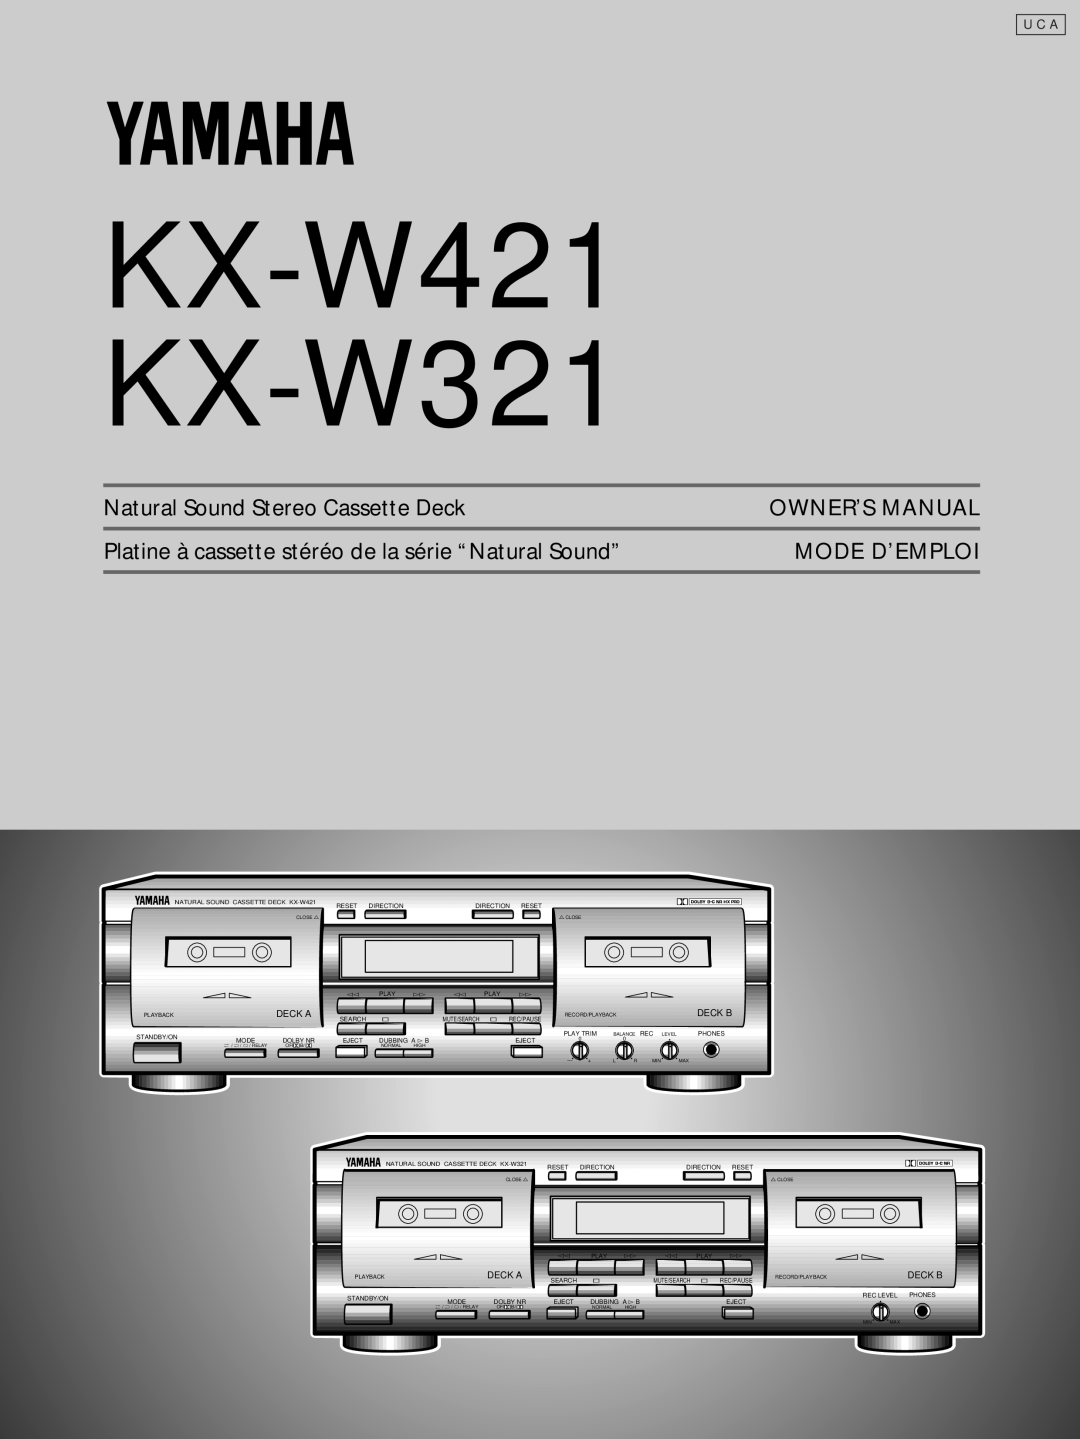 Yamaha owner manual KX-W421 KX-W321, Natural Sound Stereo Cassette Deck, Mode D’Emploi, Deck A, Deck B 